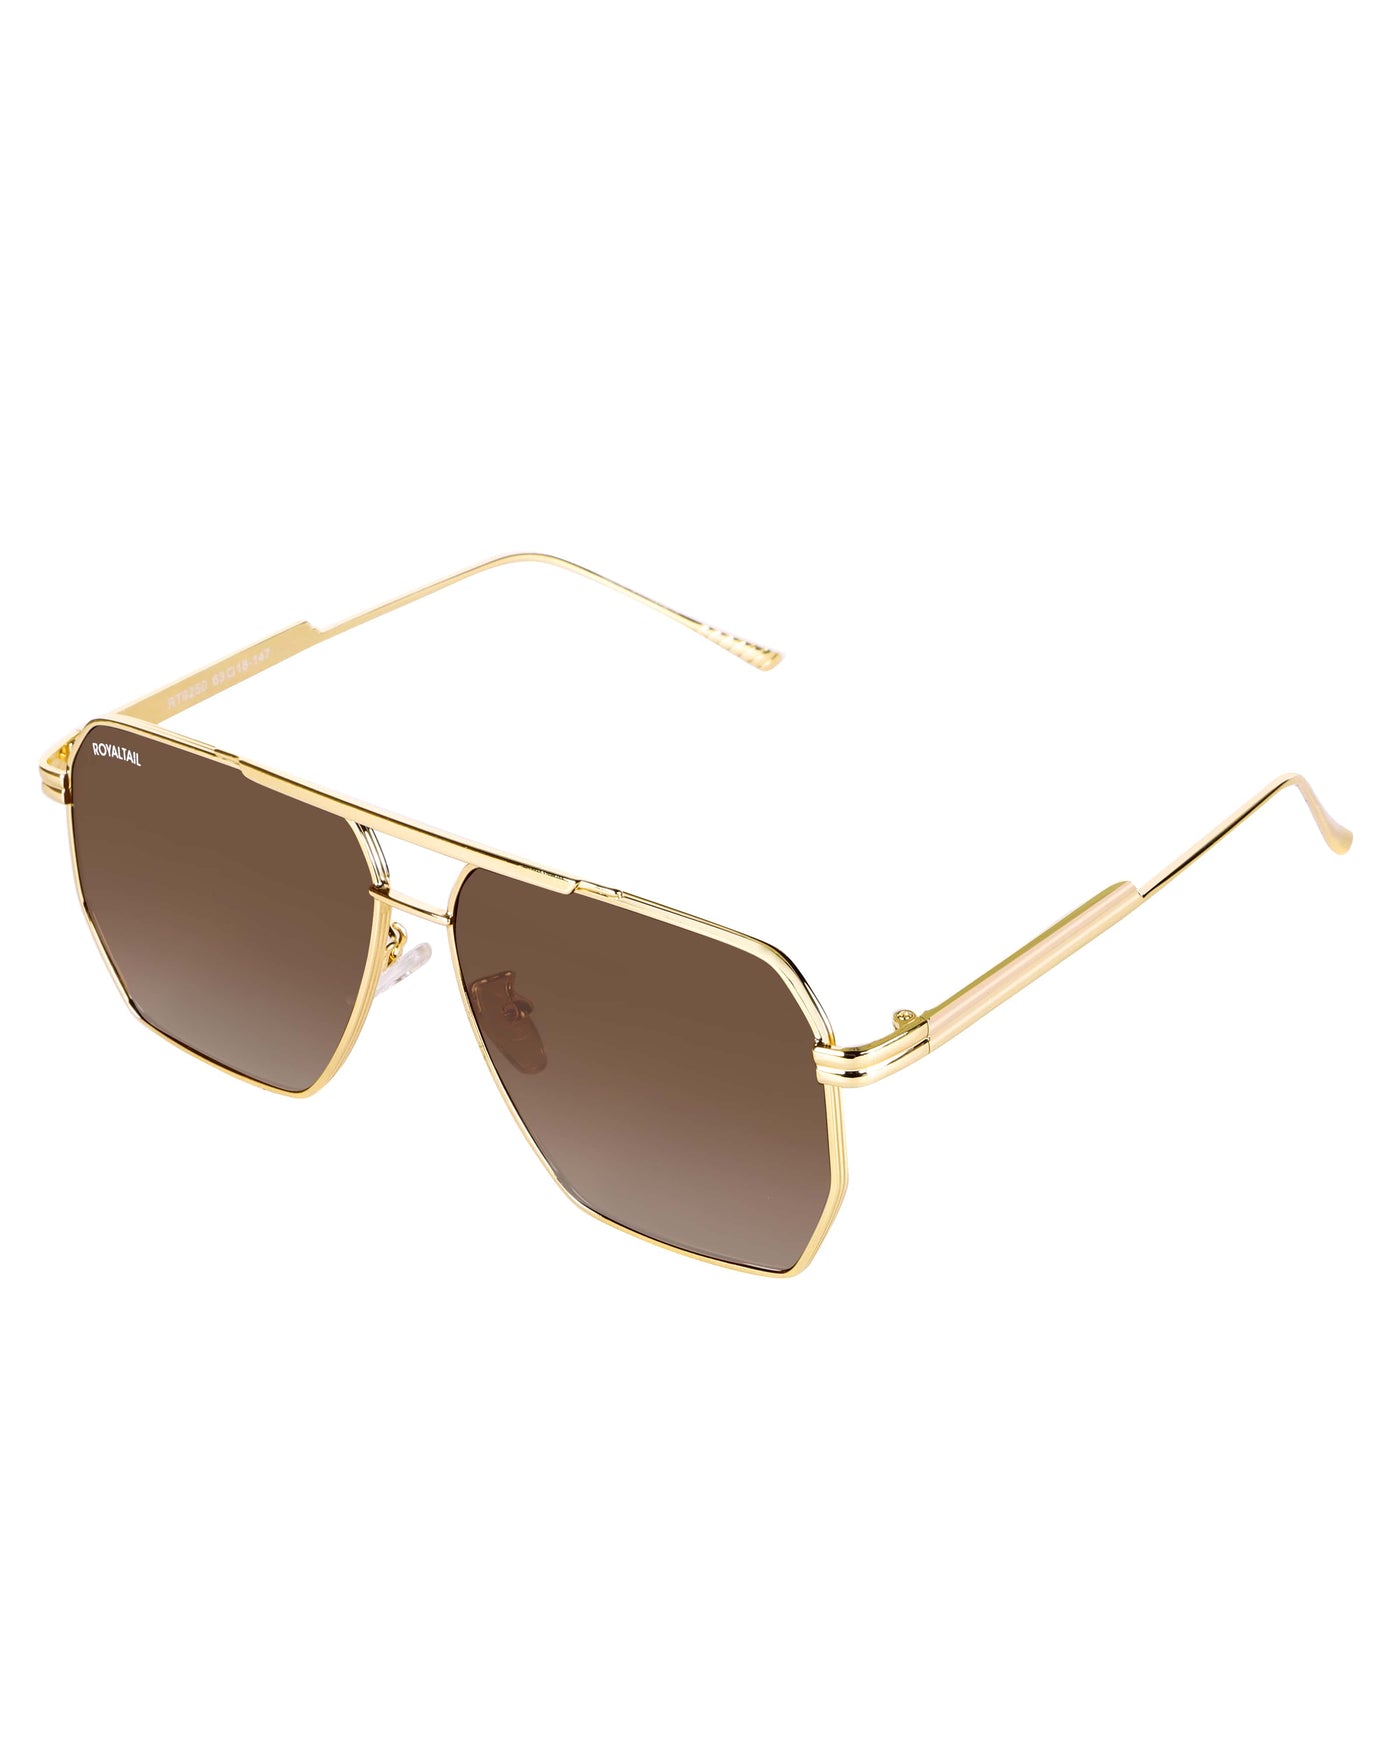 Bottaga Brown UV Protected Metal Sunglasses RT059